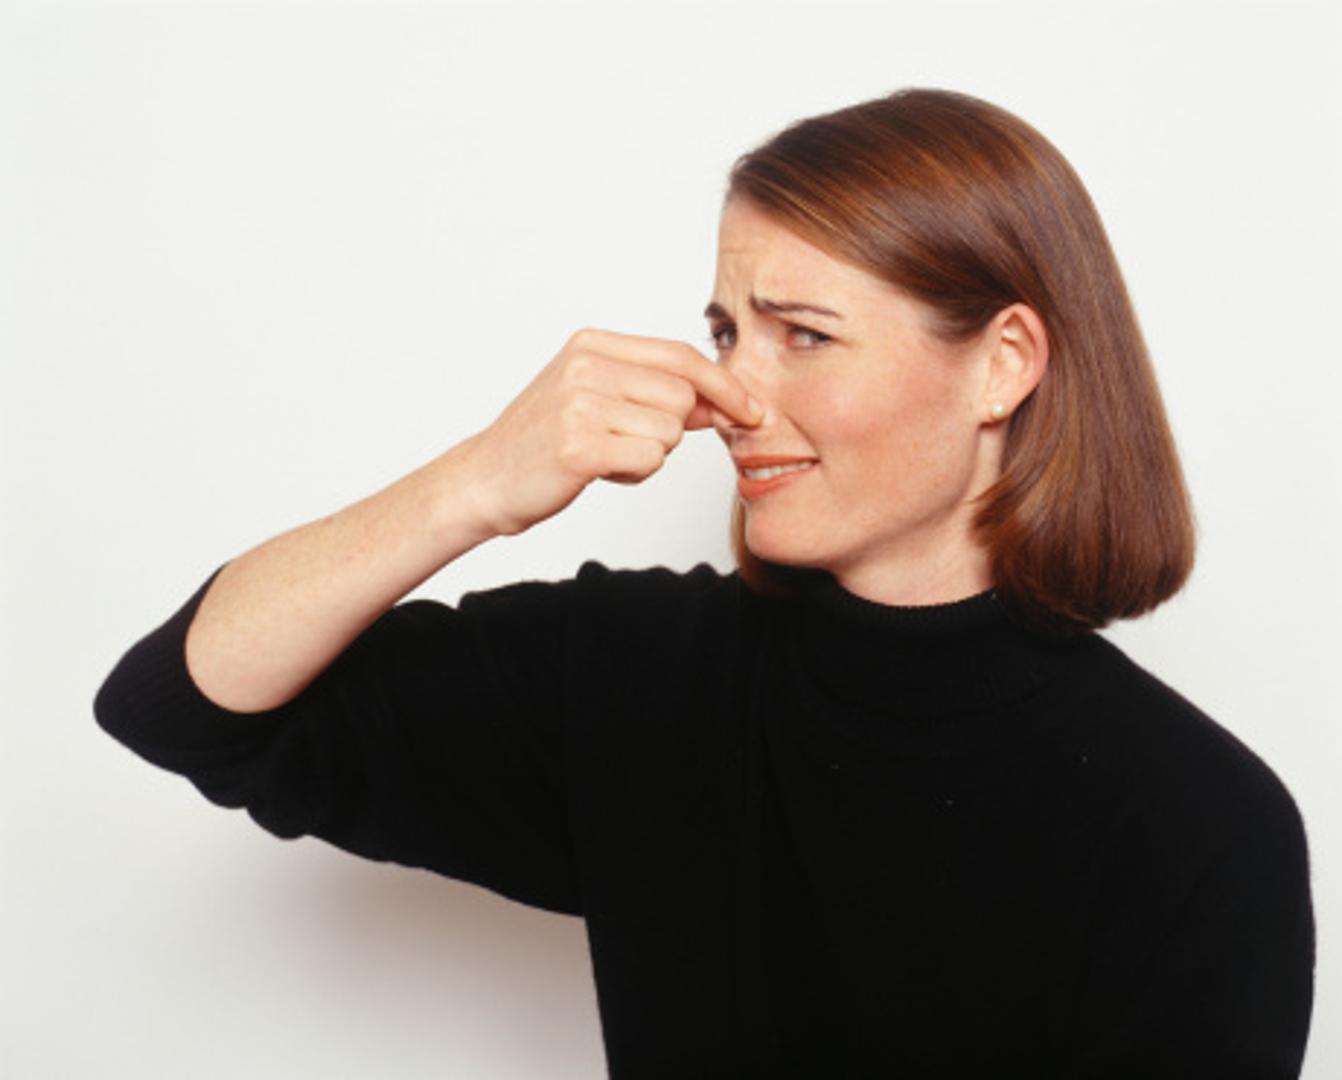 Dugotrajni loš miris u vašem domu može biti frustrirajuća glavobolja s kojom se morate nositi – a ponekad može biti i znak nečeg ozbiljnijeg. Važno je znati razliku između svakodnevnih neugodnosti zbog trulih proizvoda u hladnjaku i opasnih mirisa koji bi mogli biti pokazatelj mnogo dubljih problema. Postoje neki mirisi koji nisu samo neugodni, već potencijalno opasni za njušenje u domu. Ako se ne kontroliraju, ovakvi mirisi mogu dovesti do zdravstvenih rizika, skupih popravaka i oštećenja. Ovo su mirisi za koje stručnjaci za kućne popravke, vodoinstalatere i grijanje kažu da ih nikada ne smijete zanemariti, piše Huffpost.